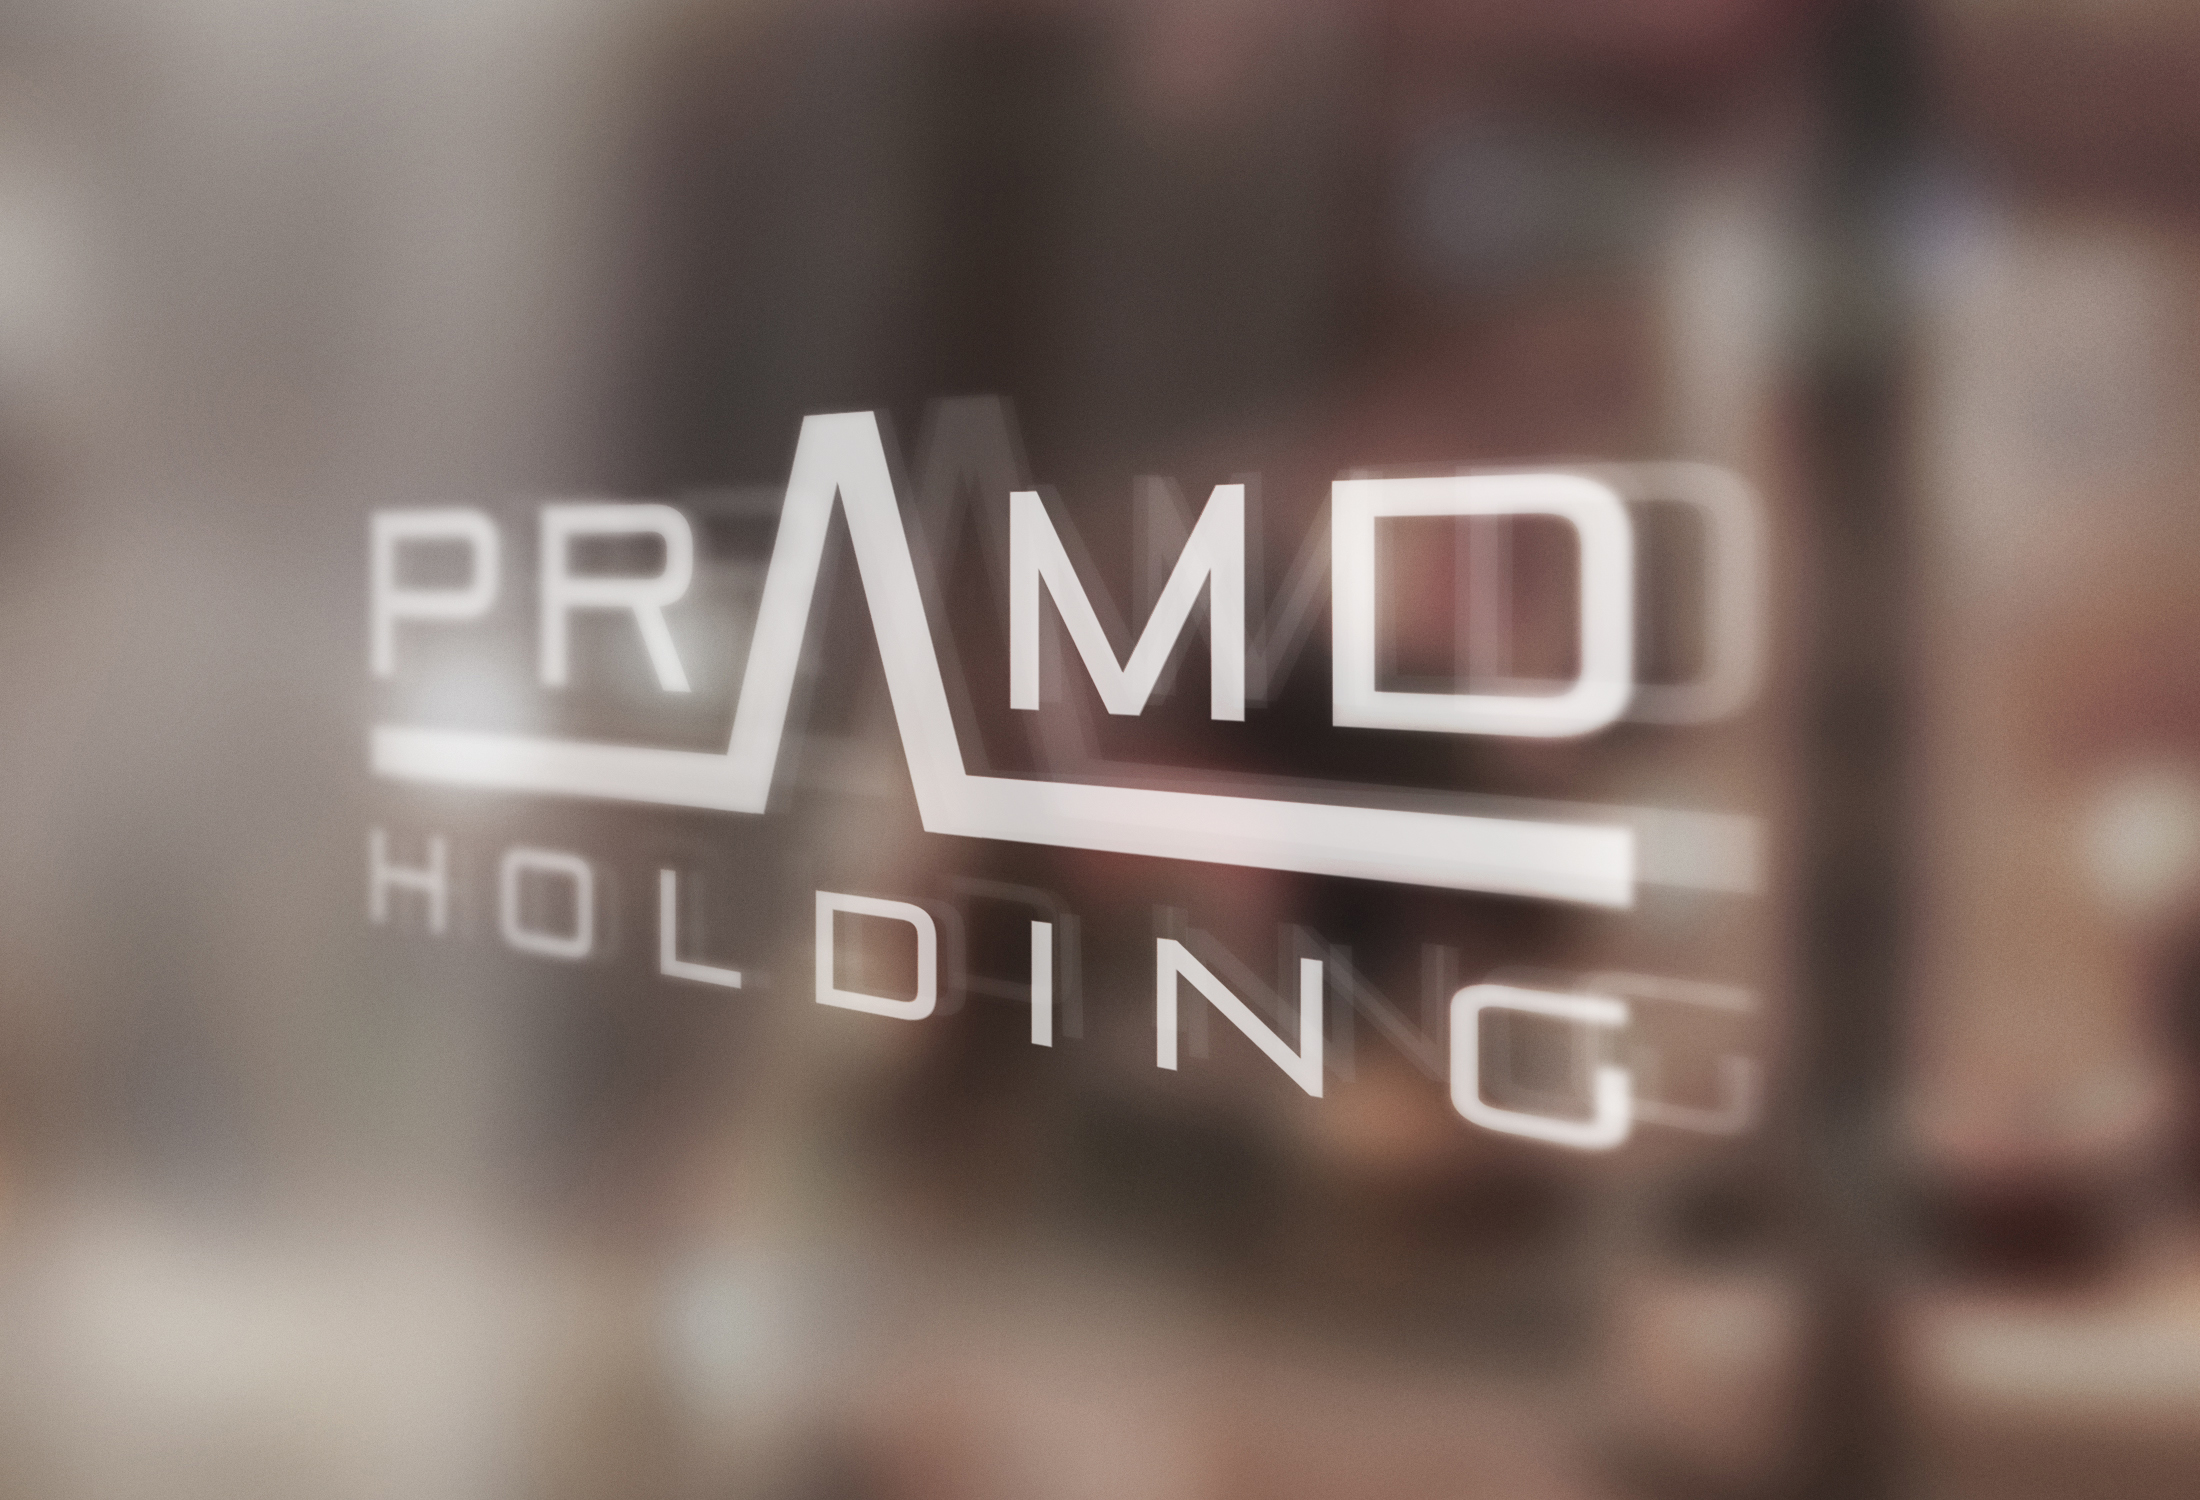 PRAMD Holding